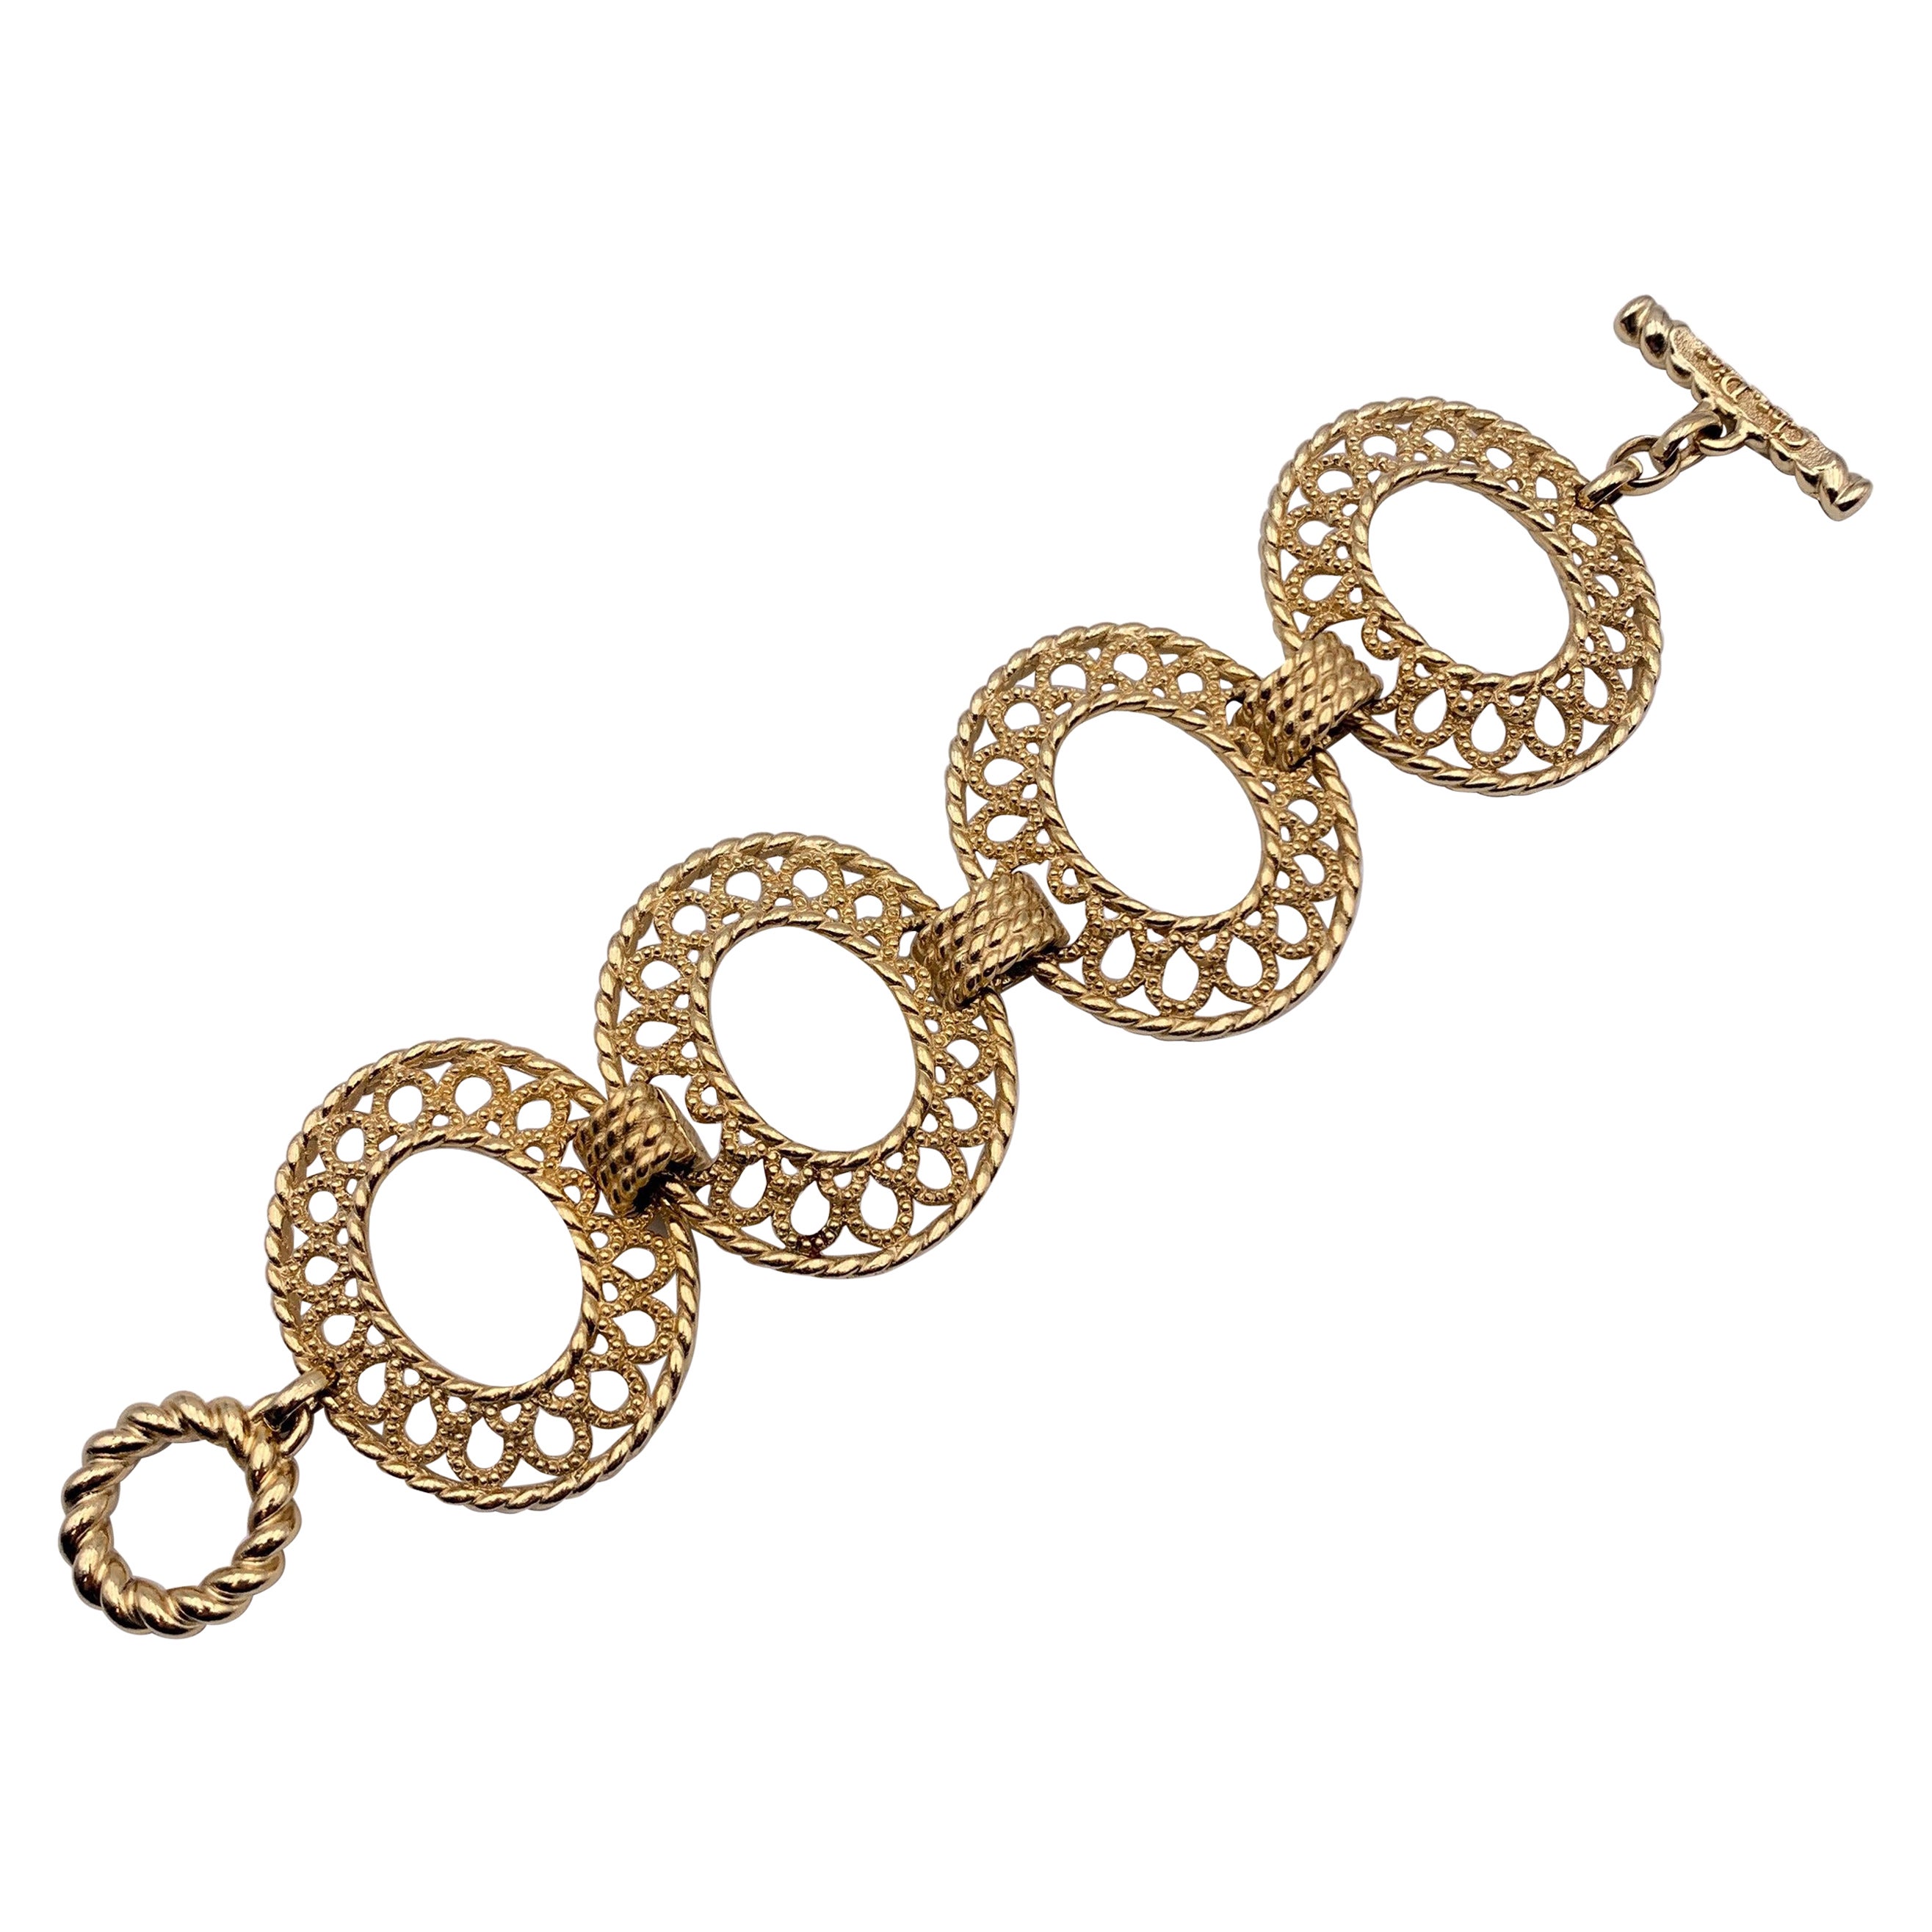 Christian Dior Vintage Gold Metal Oval Ring Bracelet